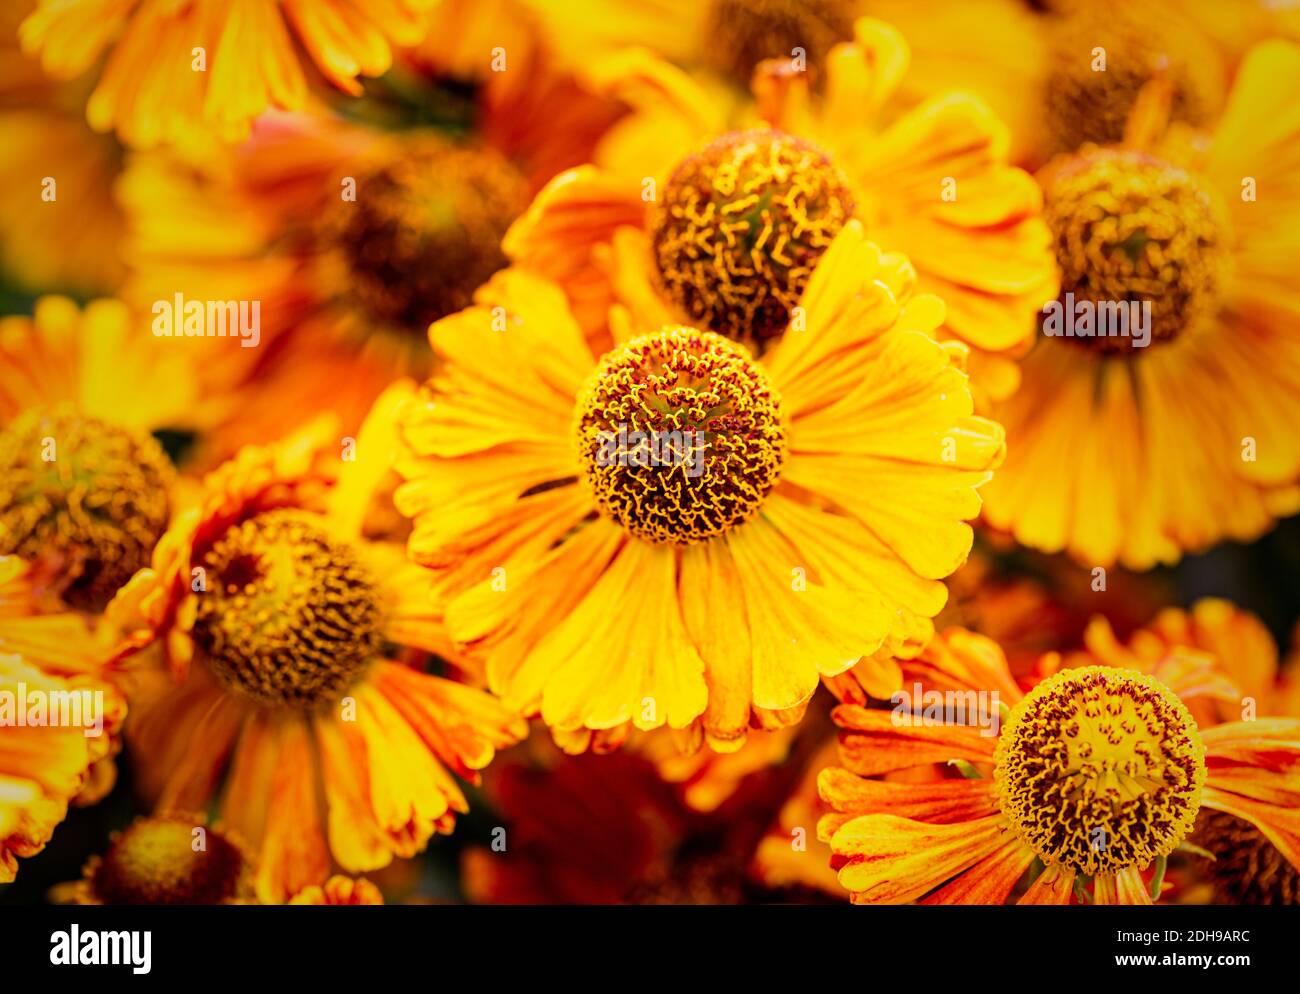 Sneezeweed, éternuement commun, Helenium 'beauté de Moerheim', fleur de couleur orange poussant à l'extérieur avec des pétales et des étamines visibles. Banque D'Images